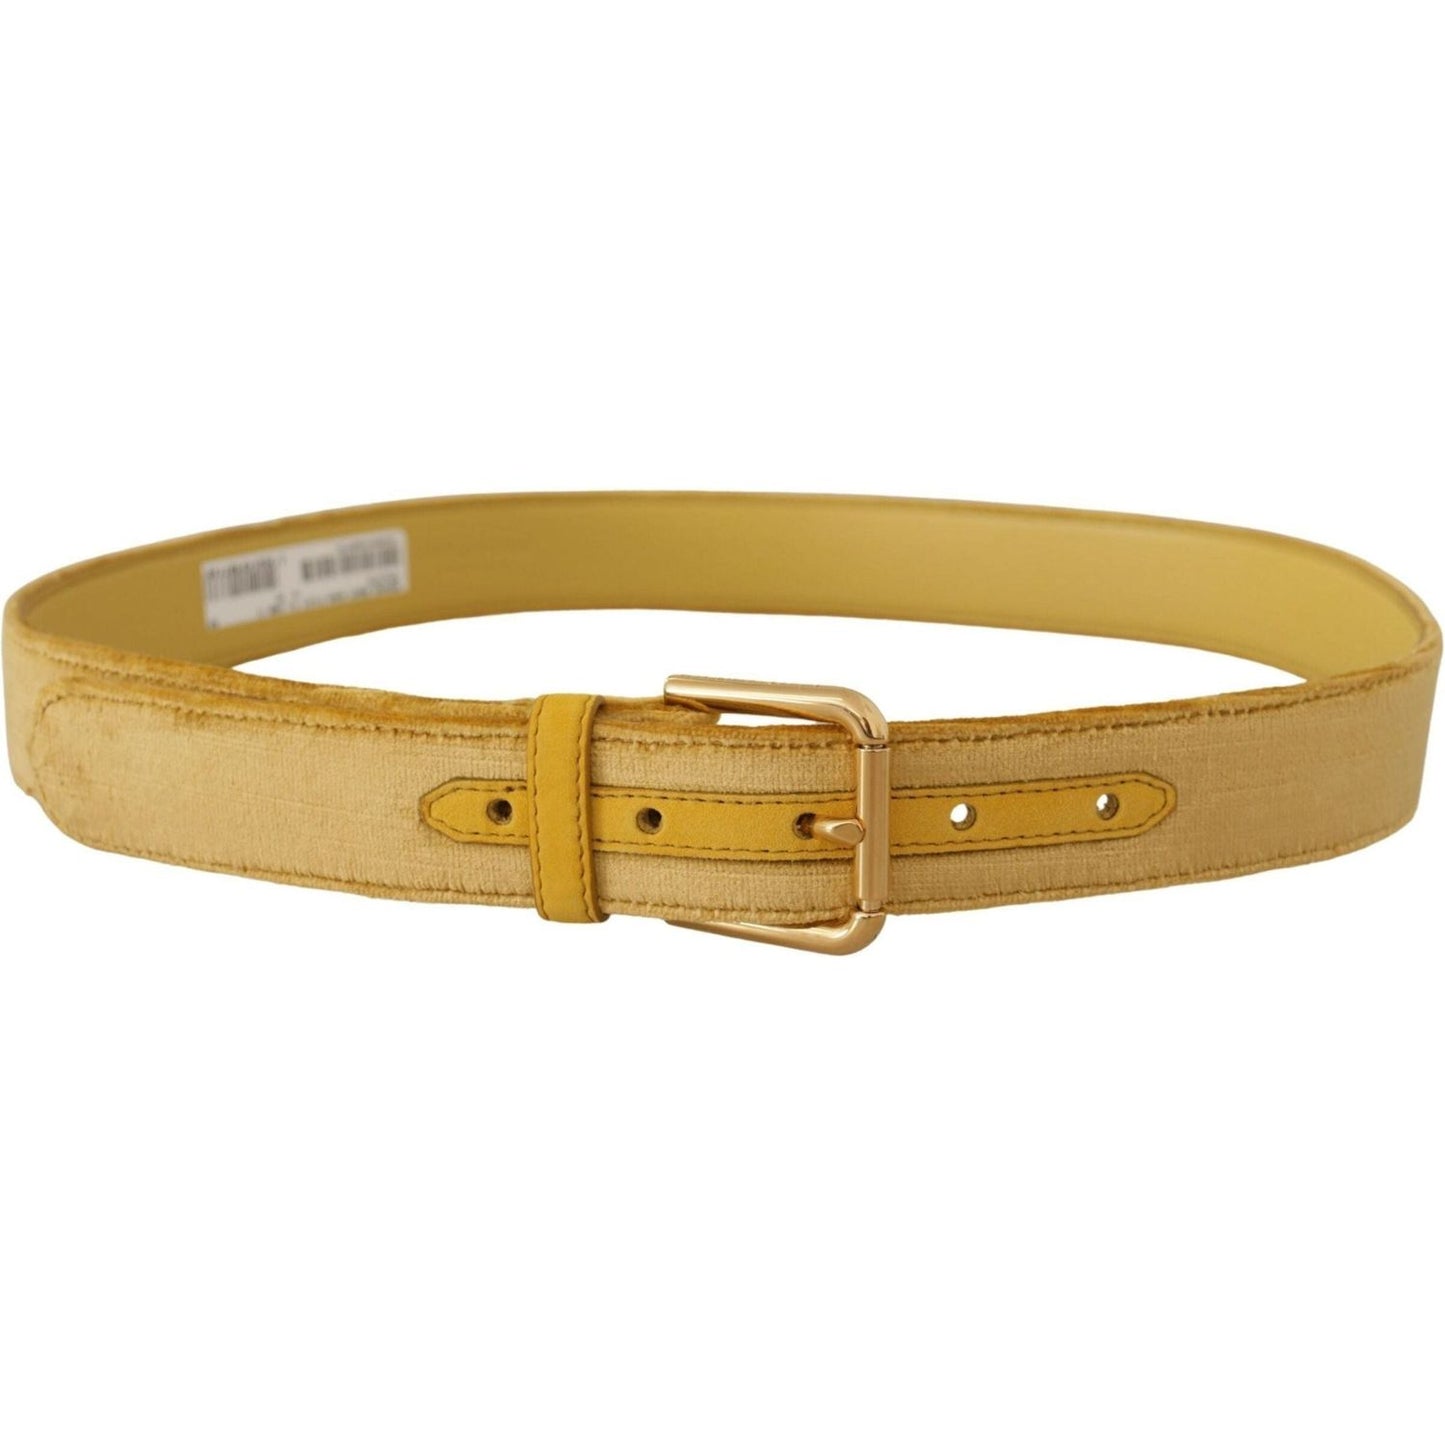 Dolce & Gabbana Elegant Velvet Designer Gold-Buckled Belt yellow-velvet-gold-metal-logo-engraved-buckle-belt IMG_8499-scaled-64e770c2-c78.jpg